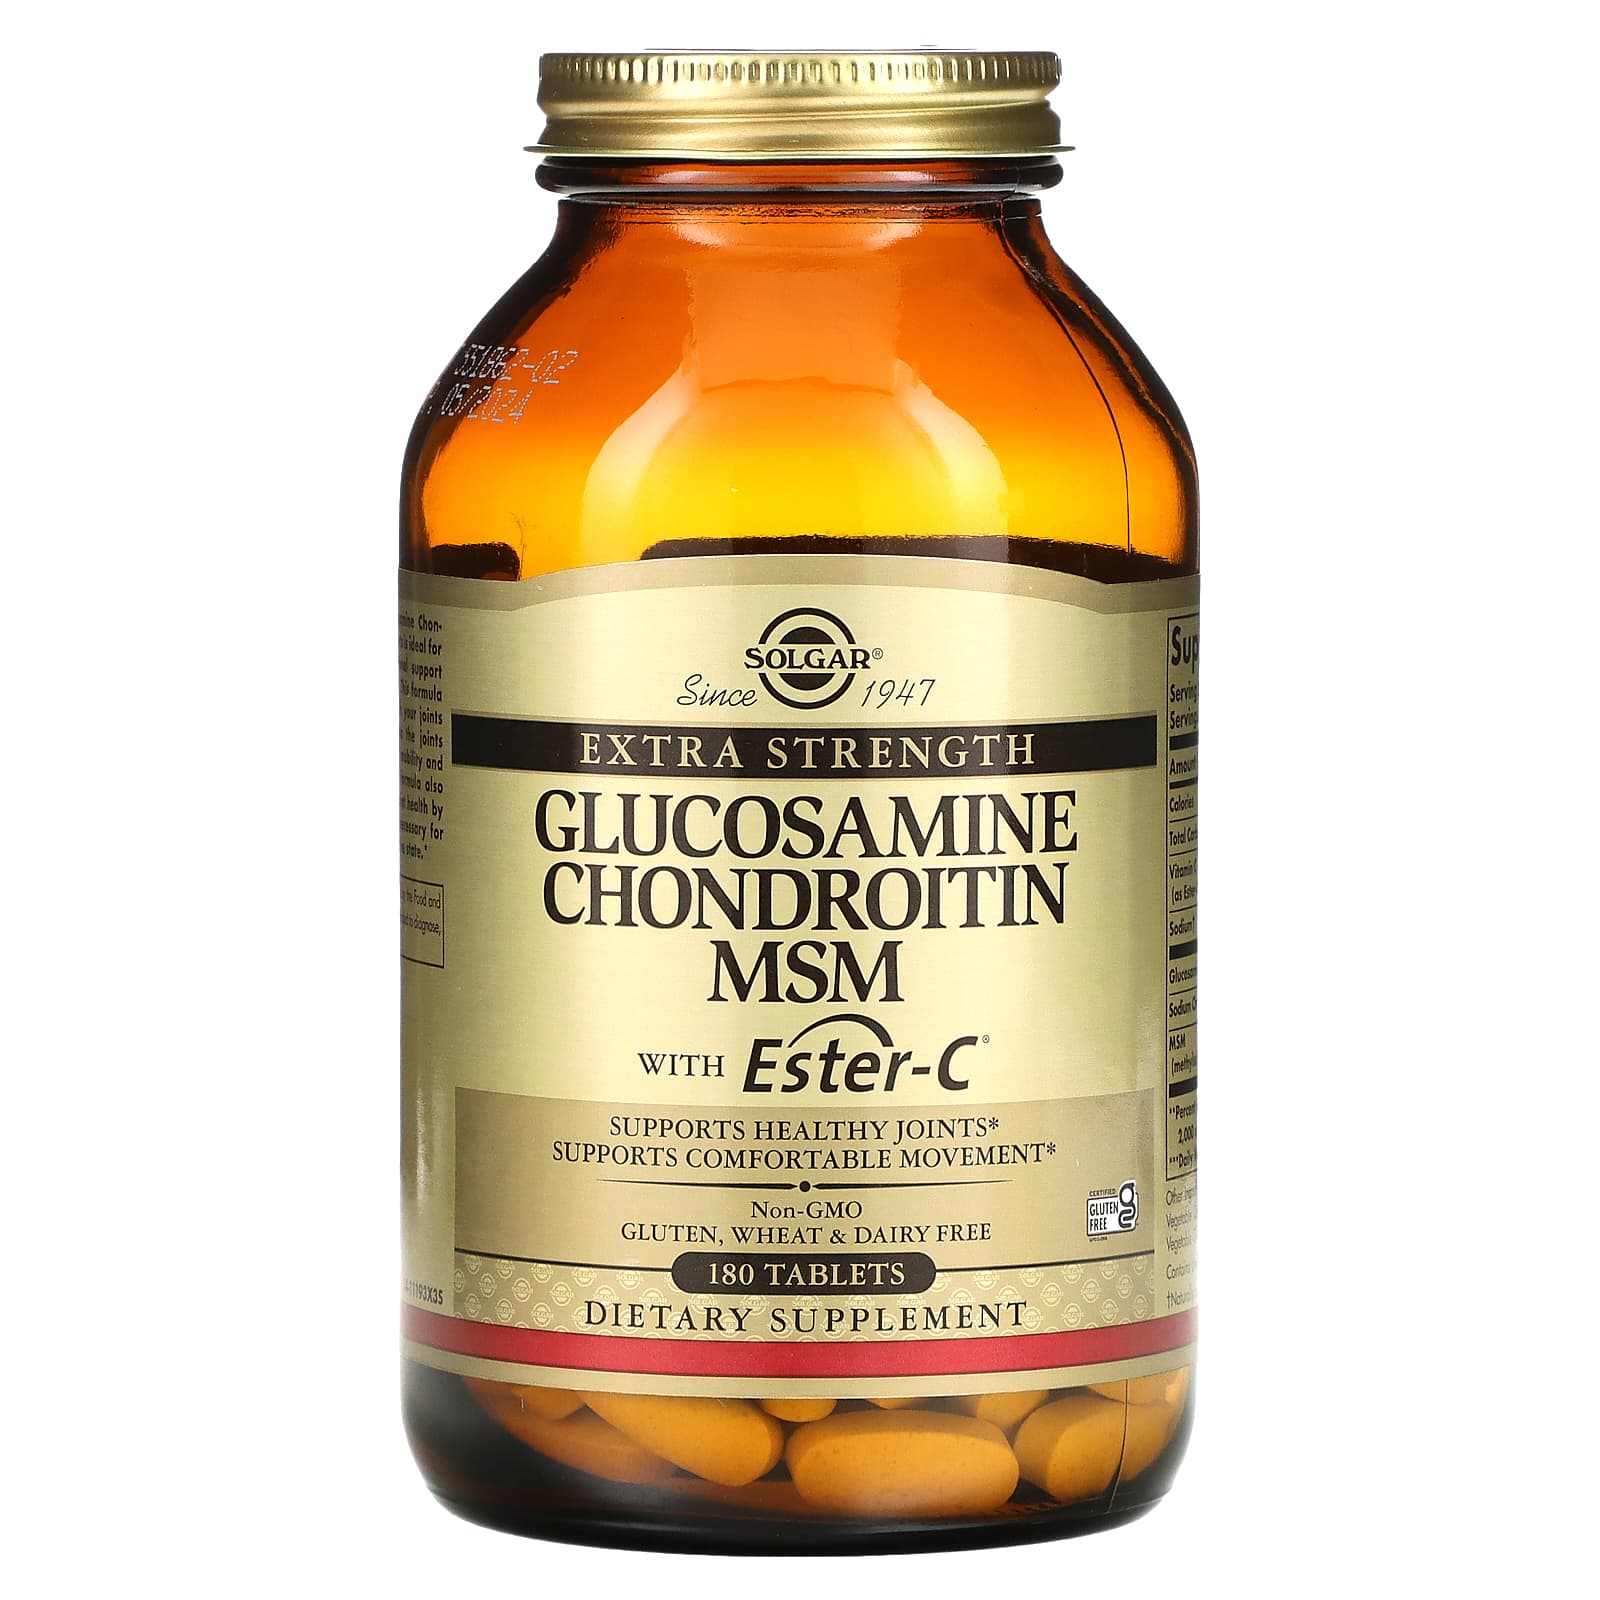 slijm Maak een sneeuwpop hoekpunt Solgar, Glucosamine Chondroitin MSM with Ester-C, 180 Tablets